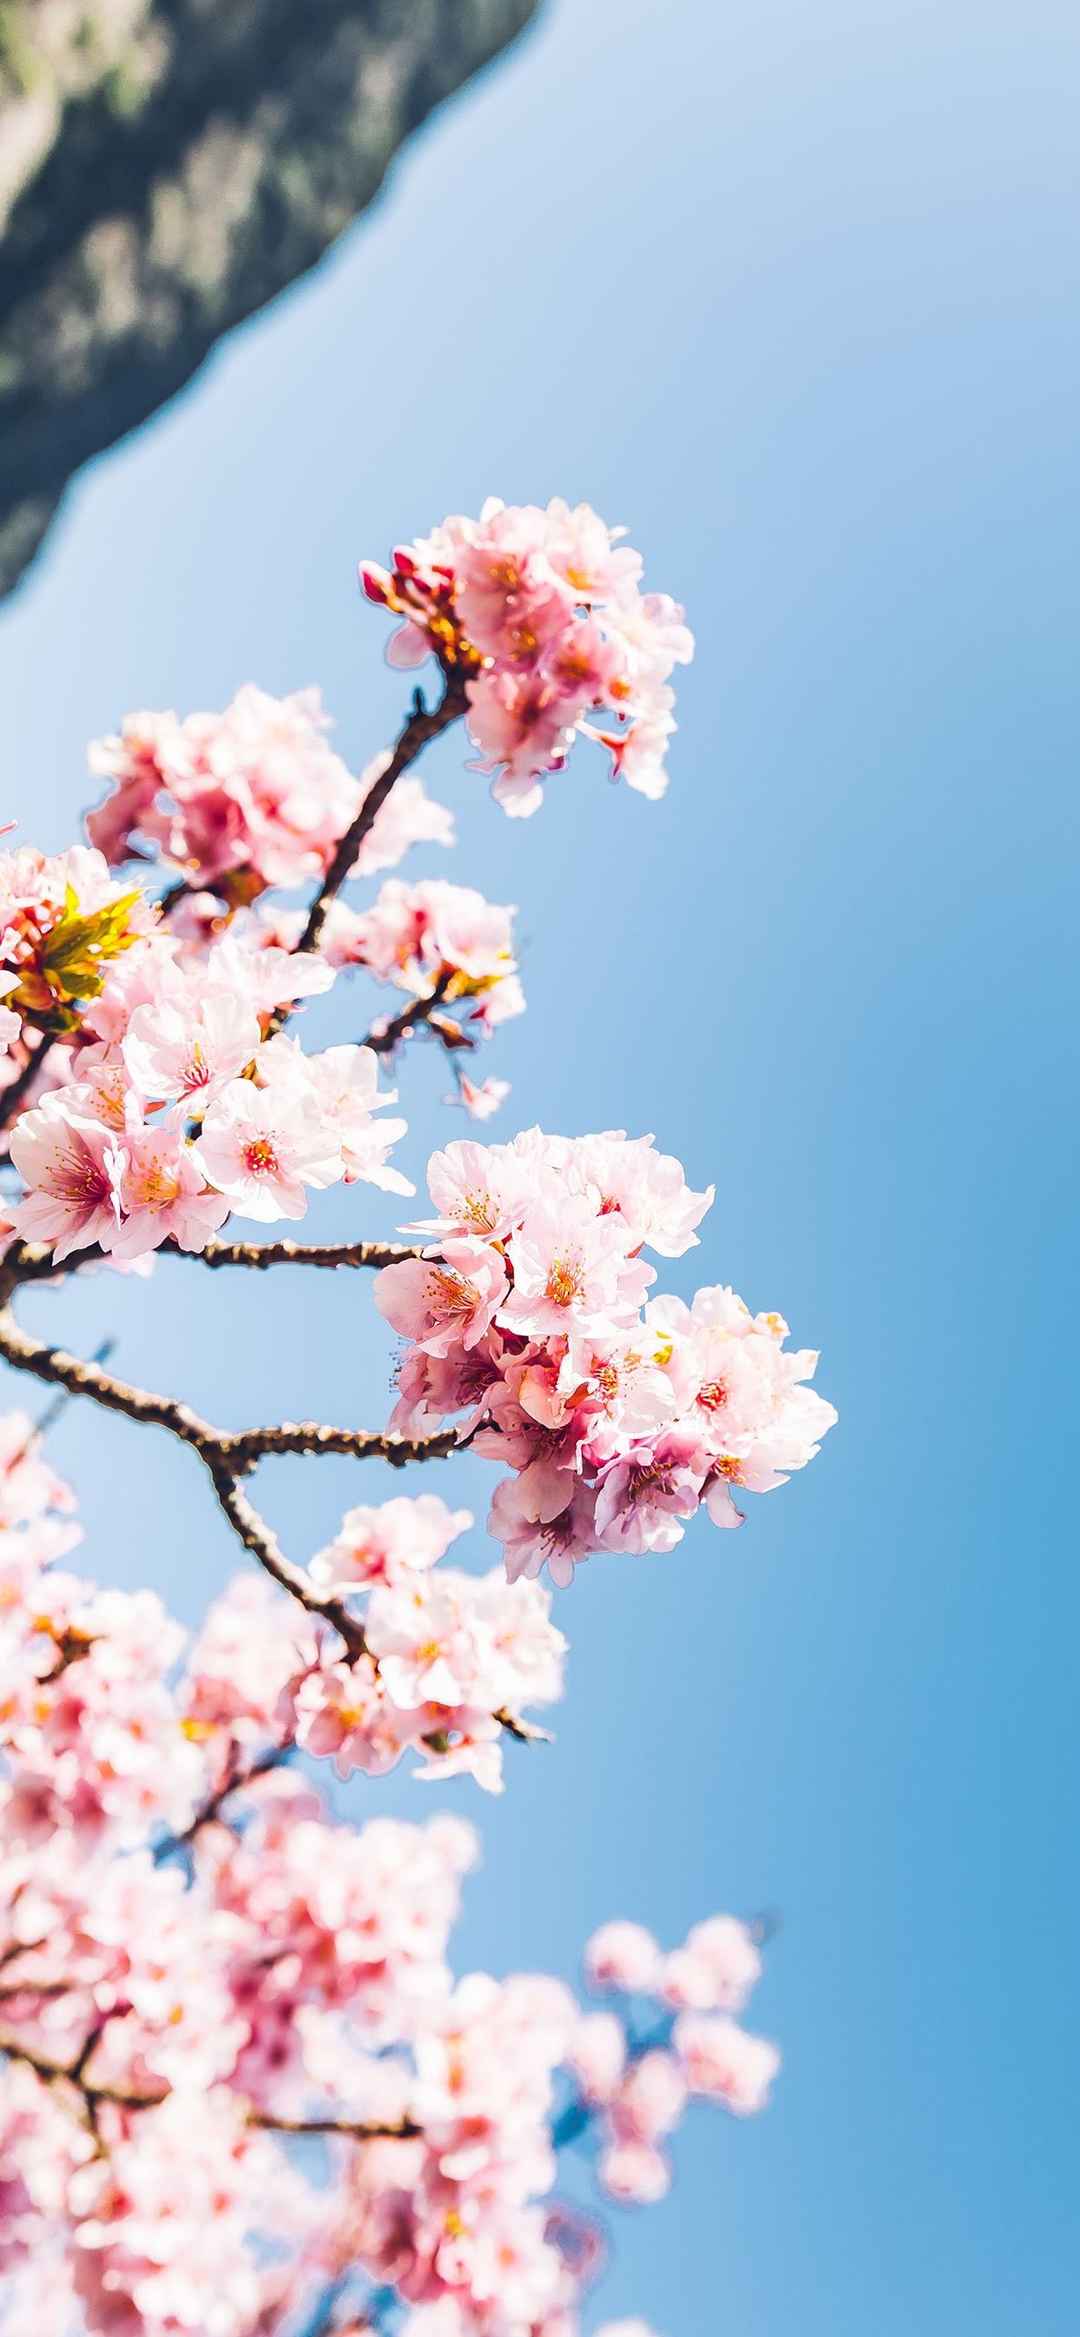 浪漫樱花日式风景摄影超级好看的横屏壁纸